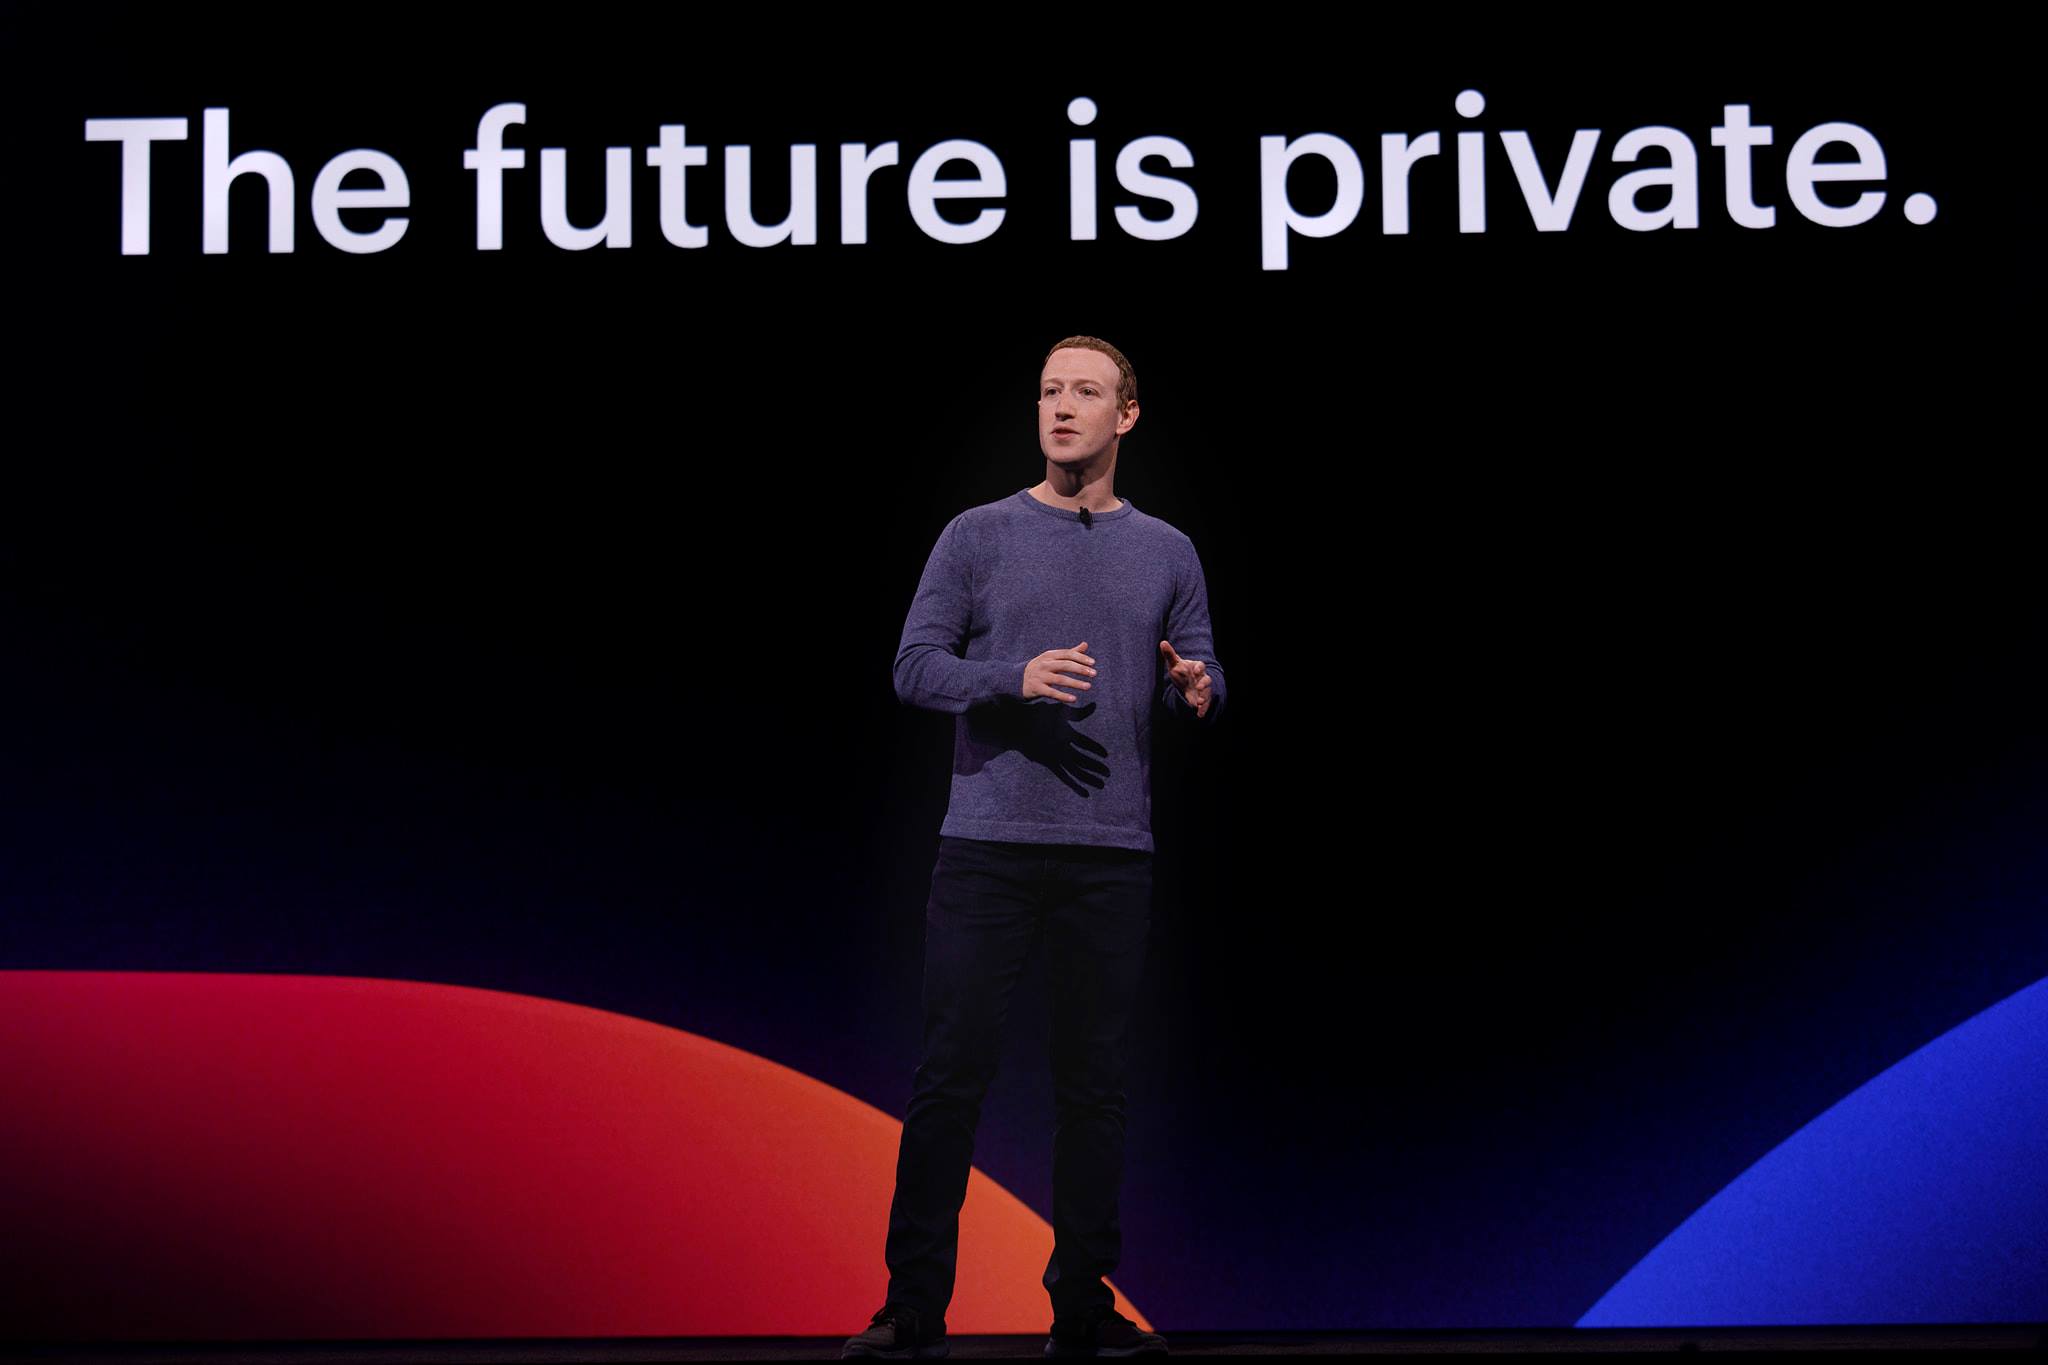 "El futuro es privado", reza una leyenda detrás de Mark Zuckerberg en una presentación de productos de la compañía. Foto: Facebook